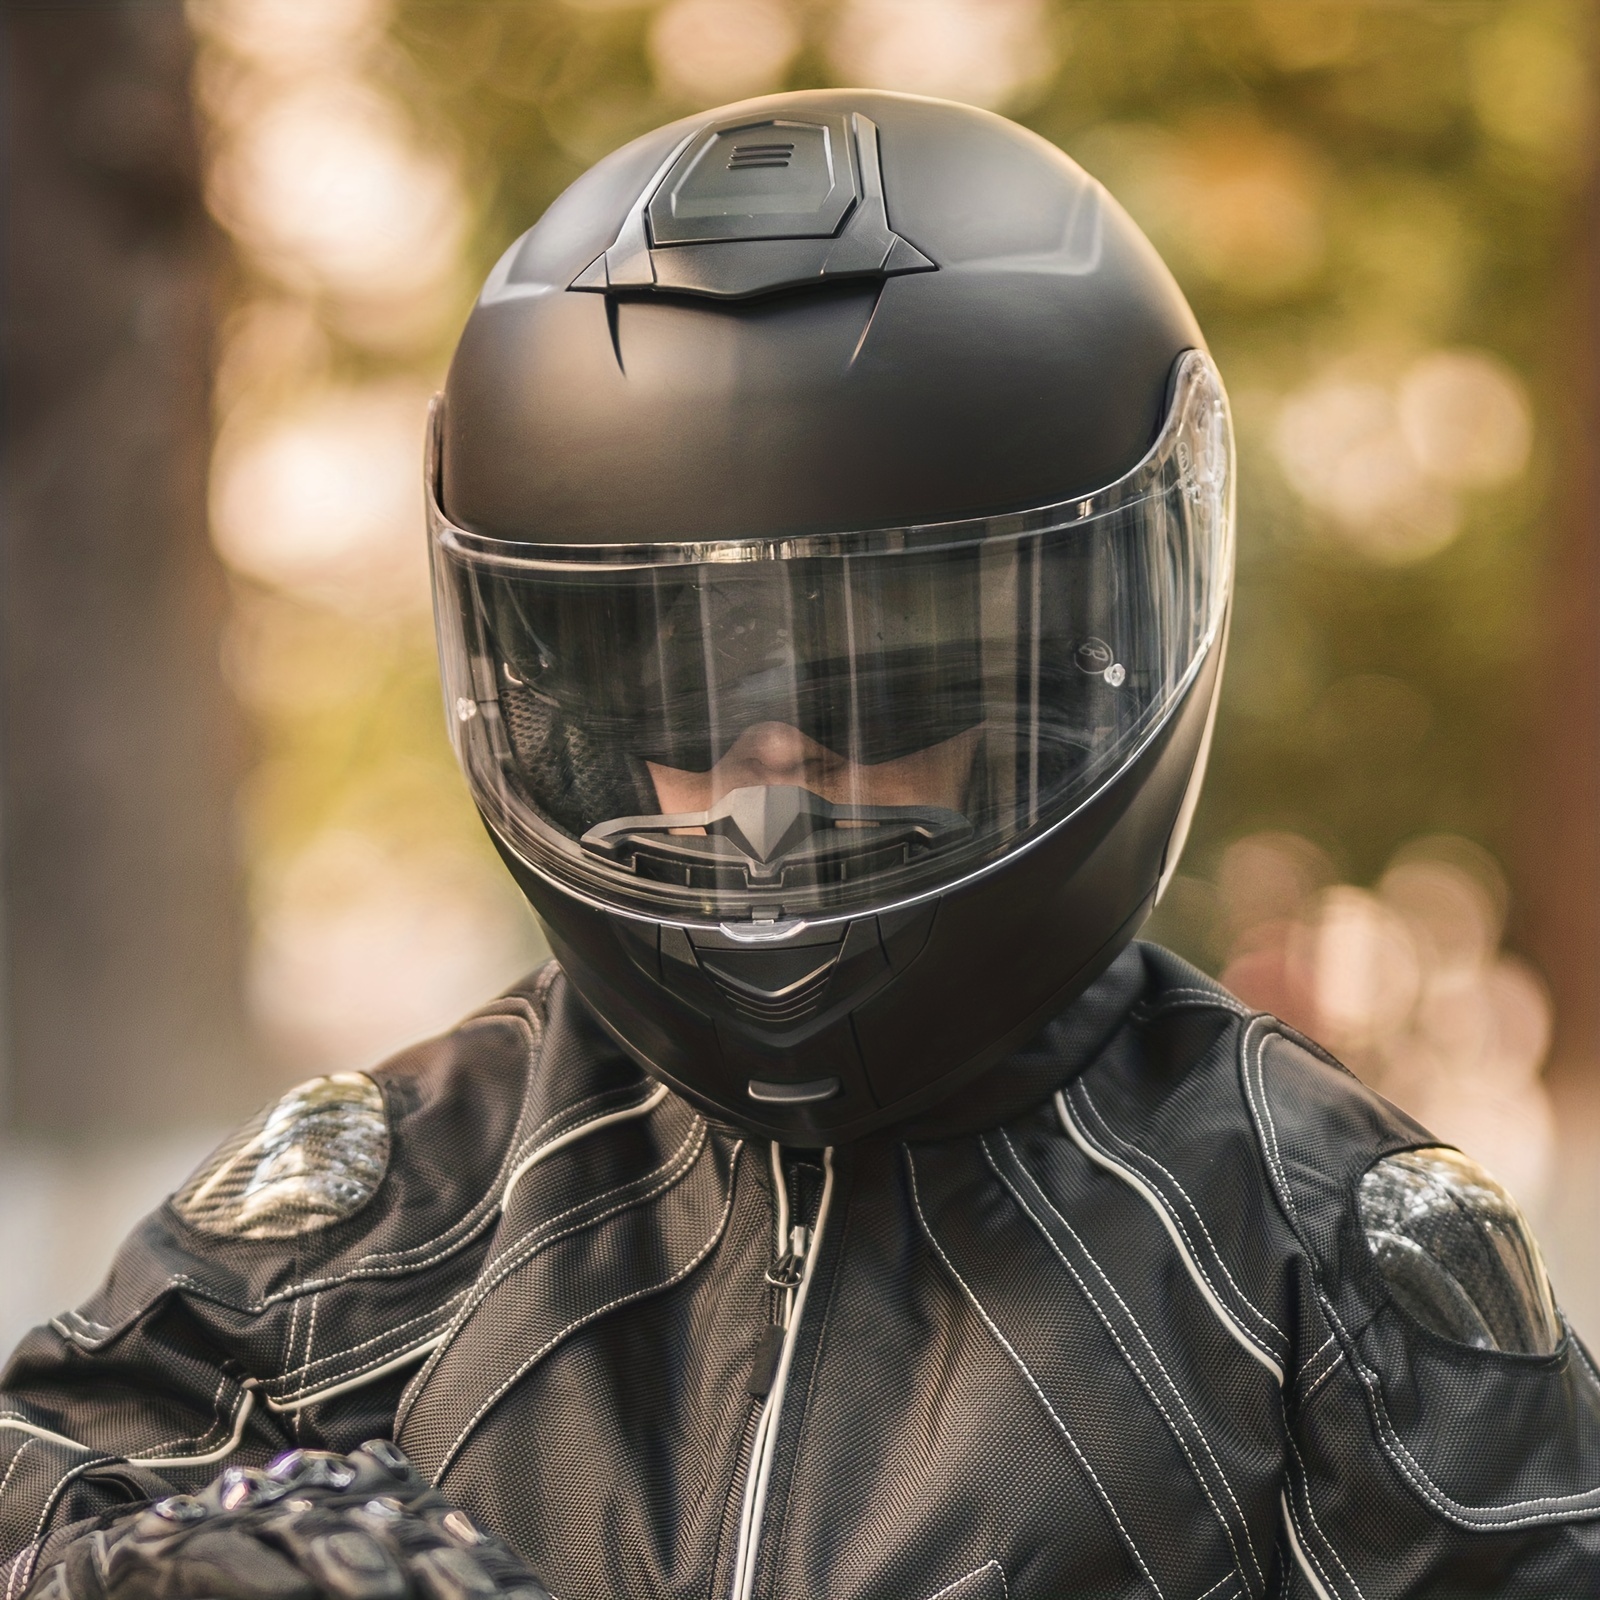  Cascos modulares de motocicleta para adultos, hombres y  mujeres, cascos de protección solar interior abatible de cara completa,  aprobados por DOT ECE para motocicleta, ciclomotor, calle, carreras, cascos,  motocross, negro brillante